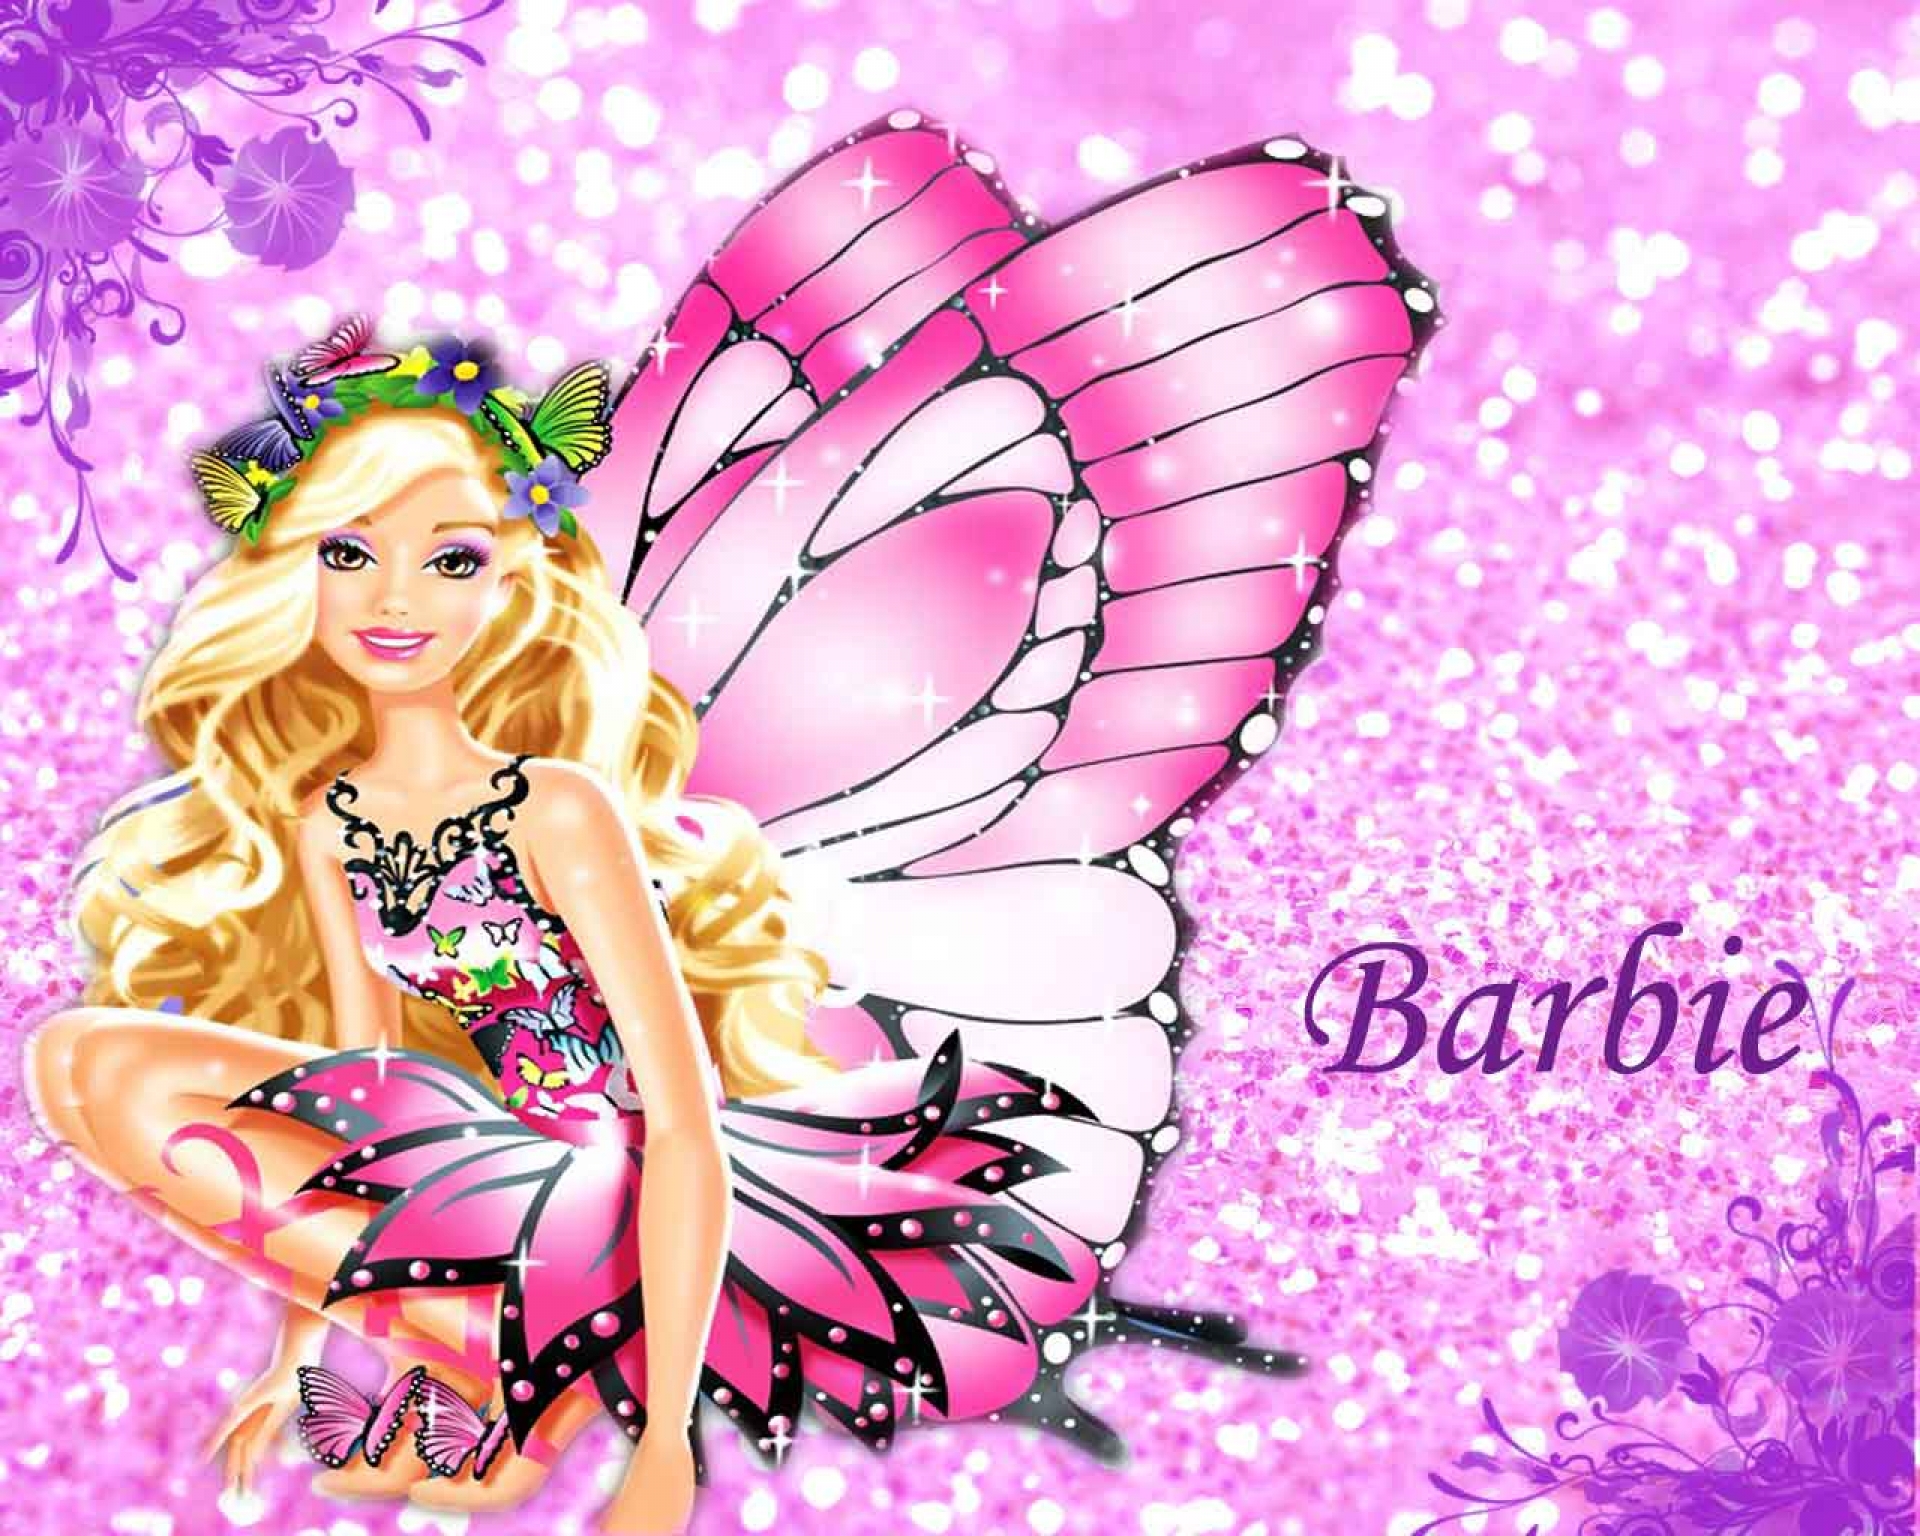 Cute Barbie Doll Wallpaper For Desktop Best - Barbie Background - HD Wallpaper 